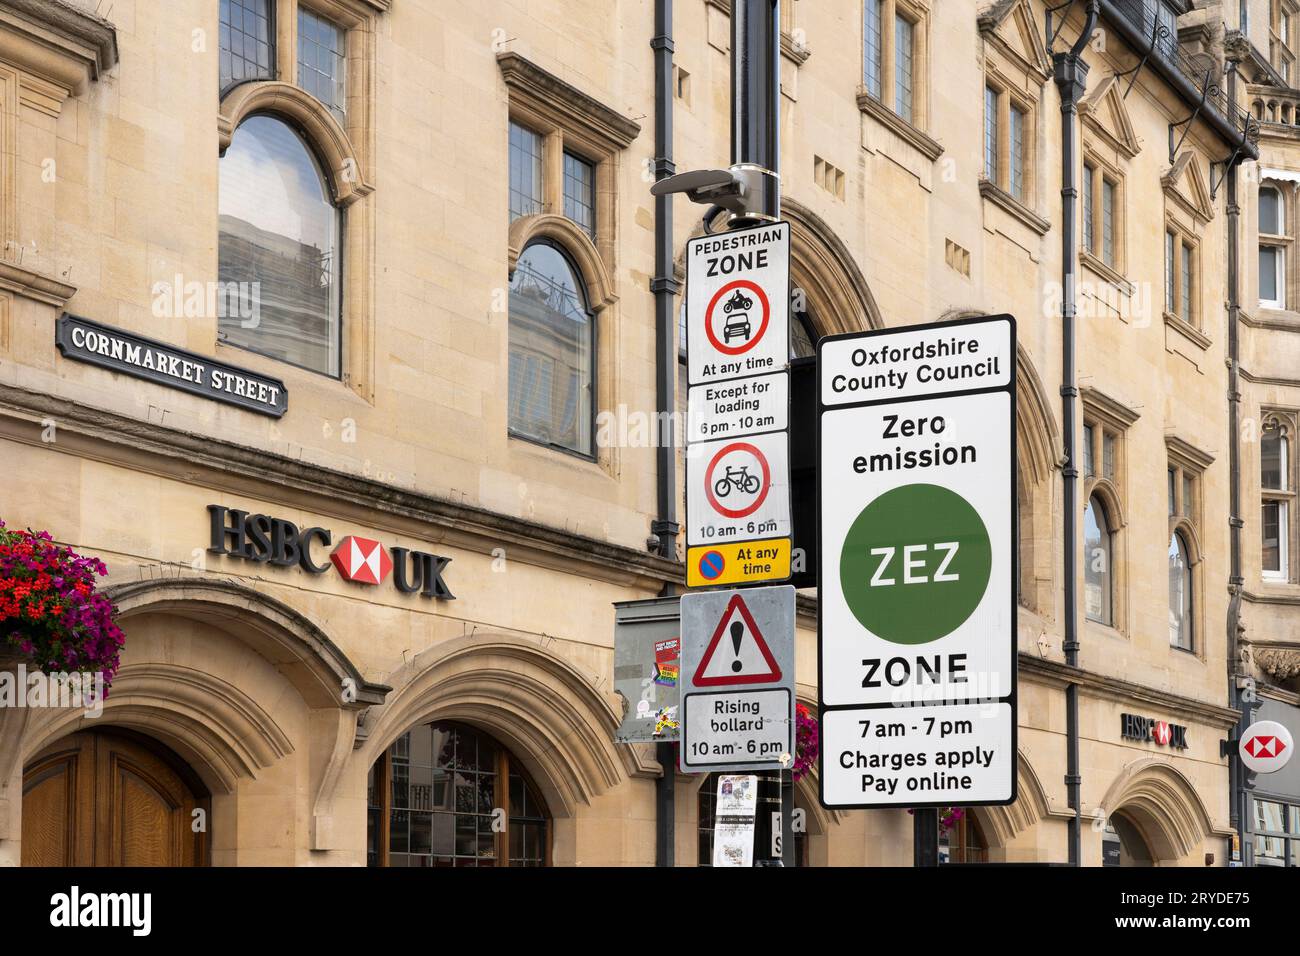 Ein Schild, das die Autofahrer warnt, dass sie in eine ZEZ (Zero Emission Zone) in der Cornmarket Street, Oxford, einfahren. Konzept: Reduzierung der Emissionen, Verringerung des Verkehrs Stockfoto